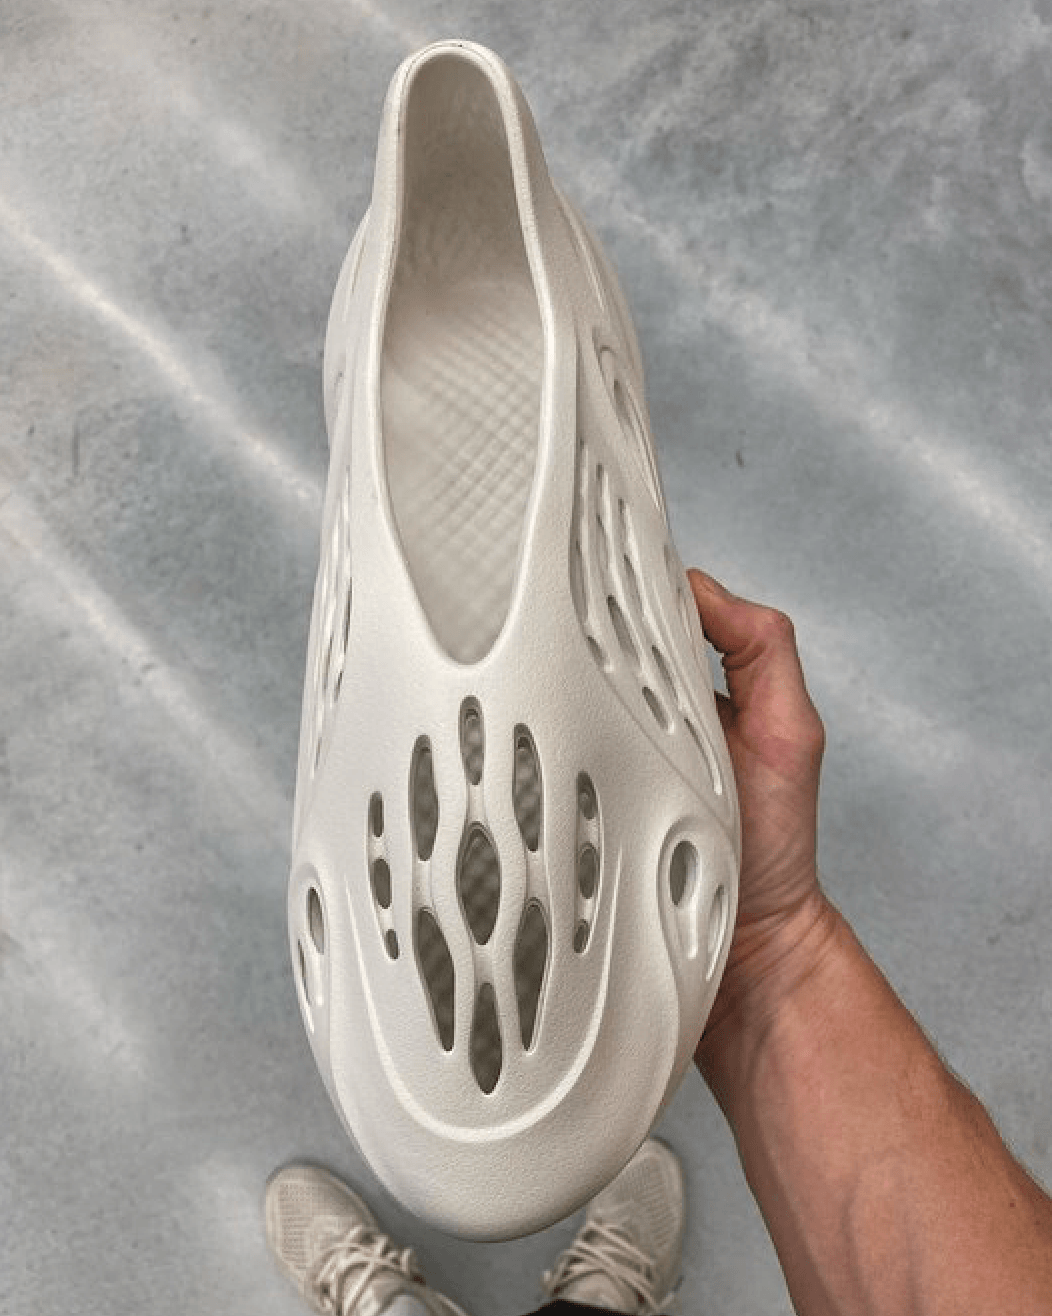 El Yeezy Foam Runner más cerca que nunca. | Desempacados